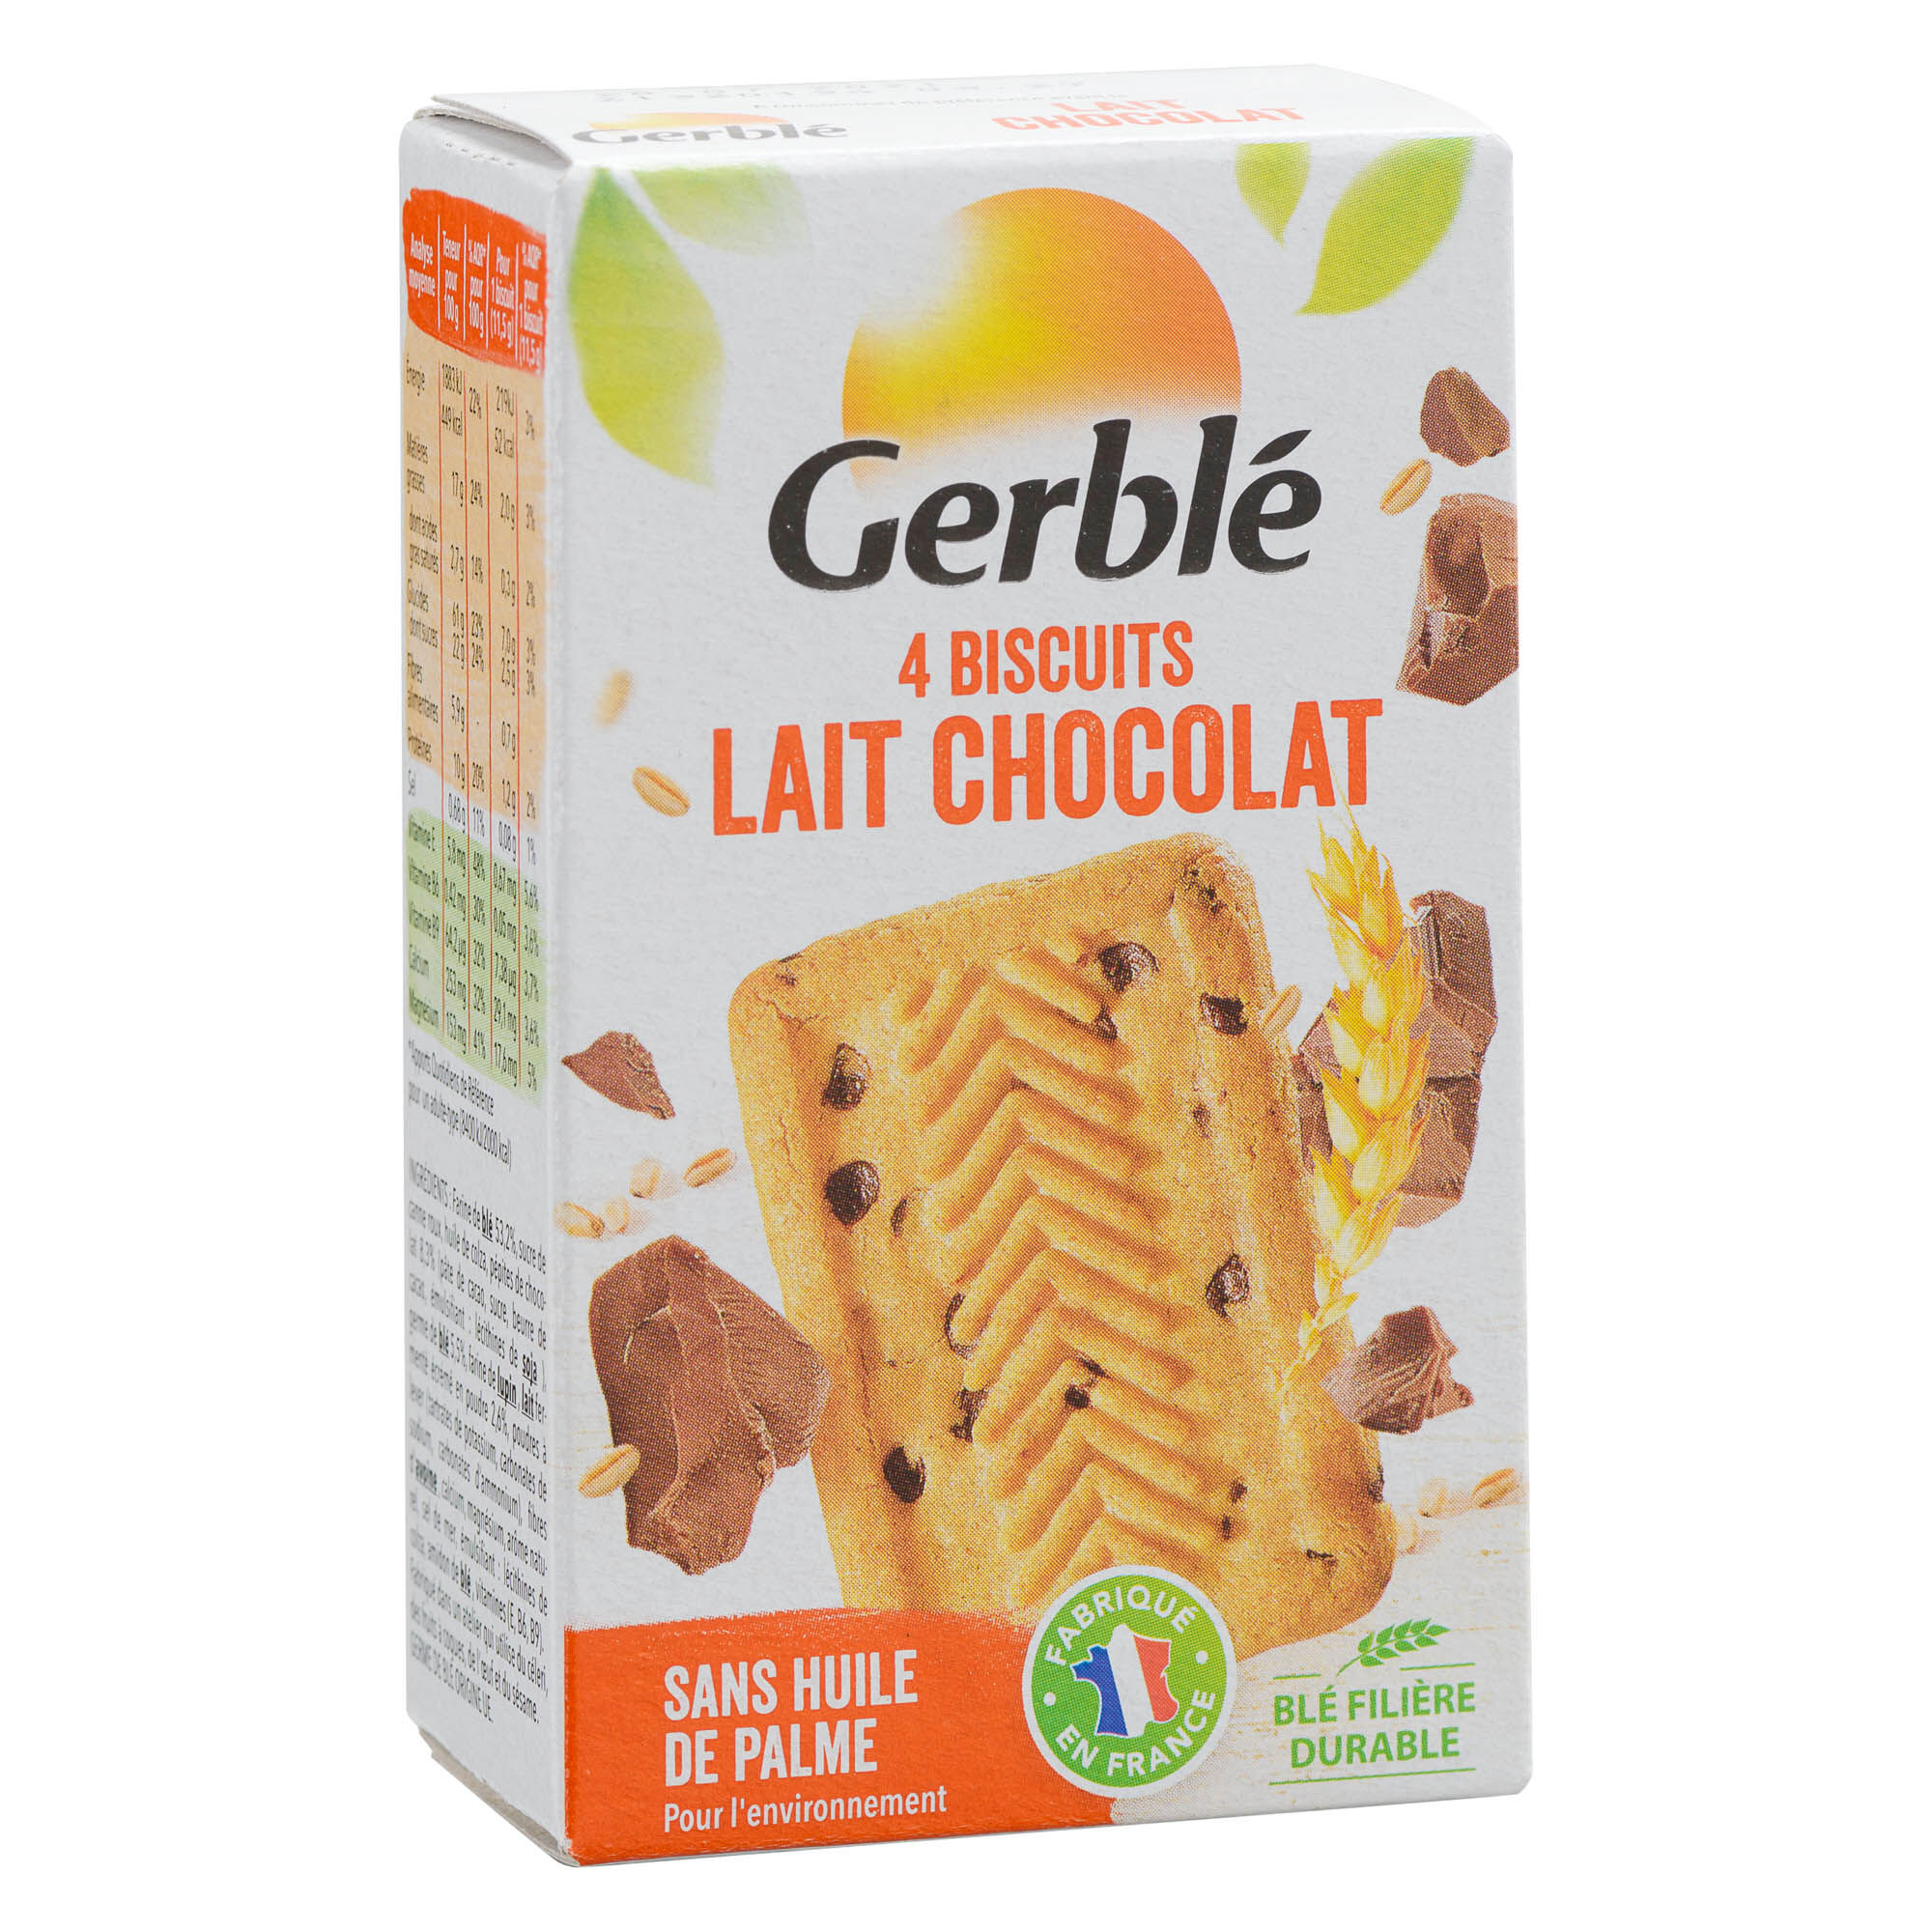 Biscuits chocolat au lait Gerblé x 4 - Paquet de 46 g